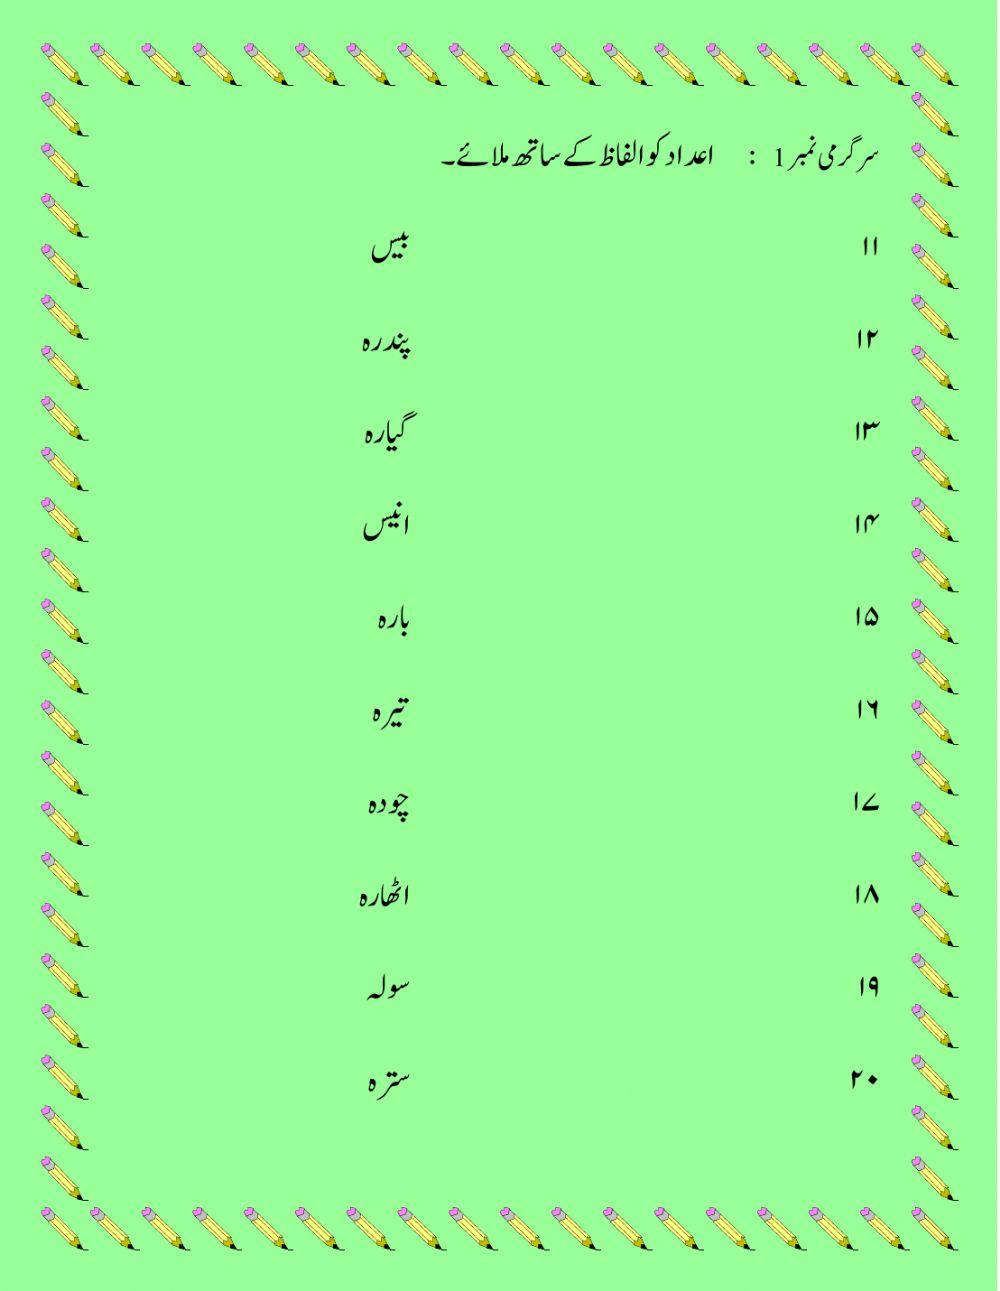 Urdu counting 11-20